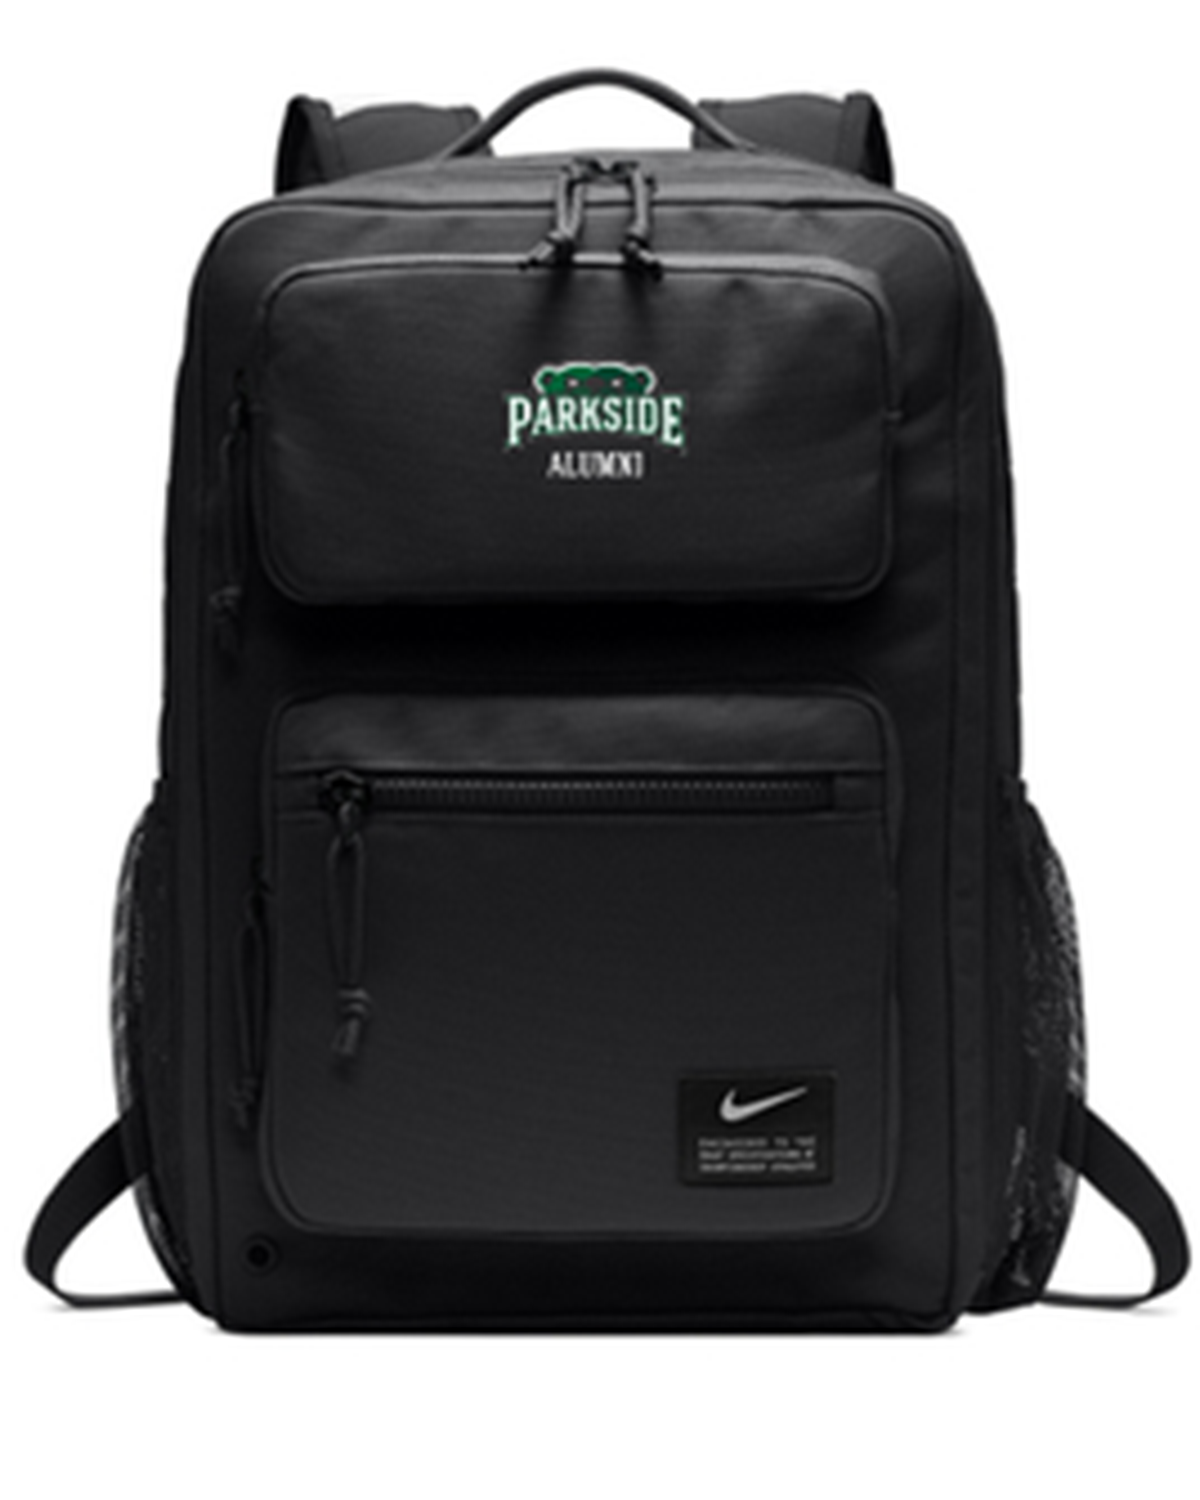 Nike black backpack with Parkside alumni logo